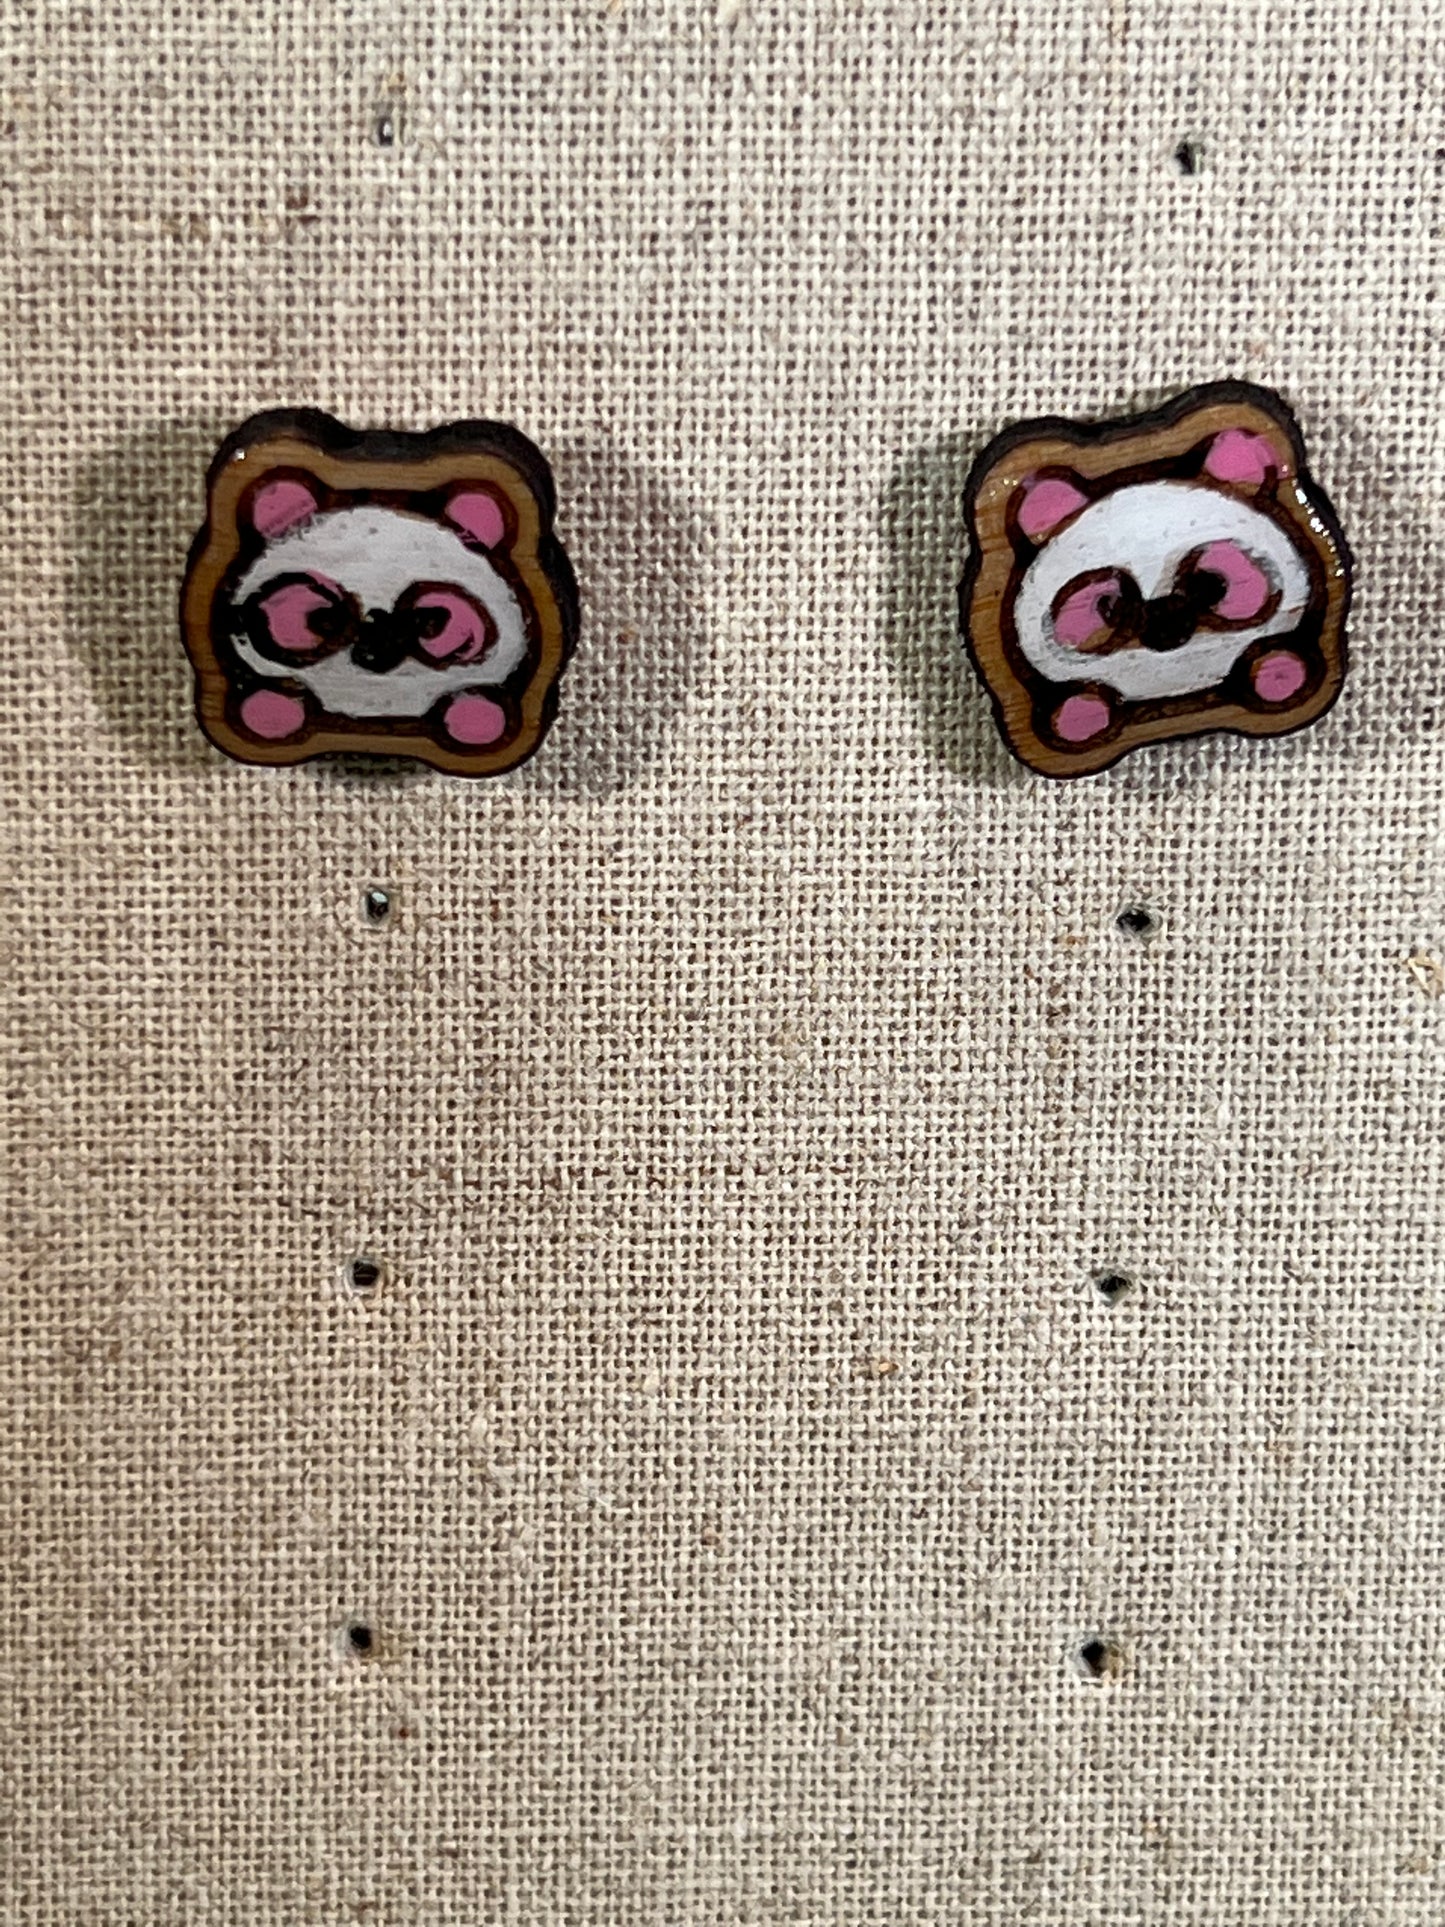 Wood Pink Panda Earrings  - Handmade Earring Pair